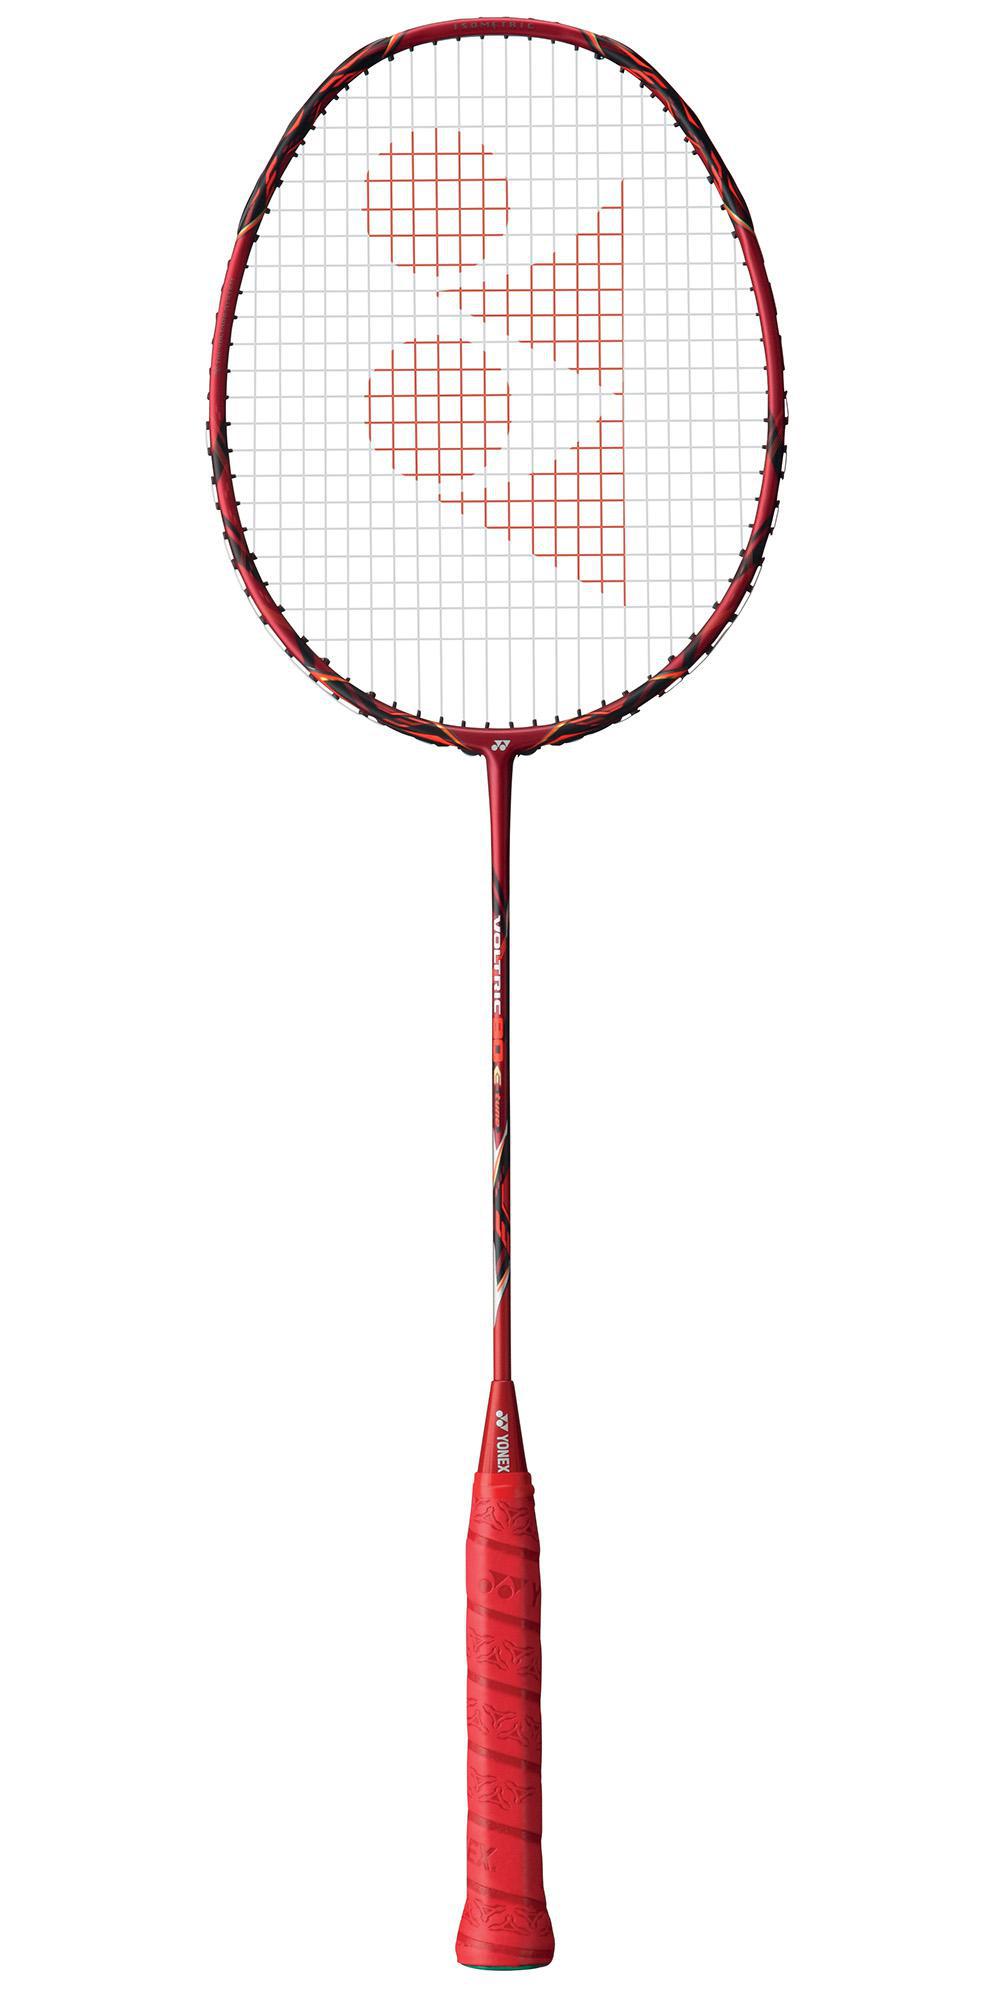  Yonex  Voltric  80  E tune  Badminton Racket  Tennisnuts com